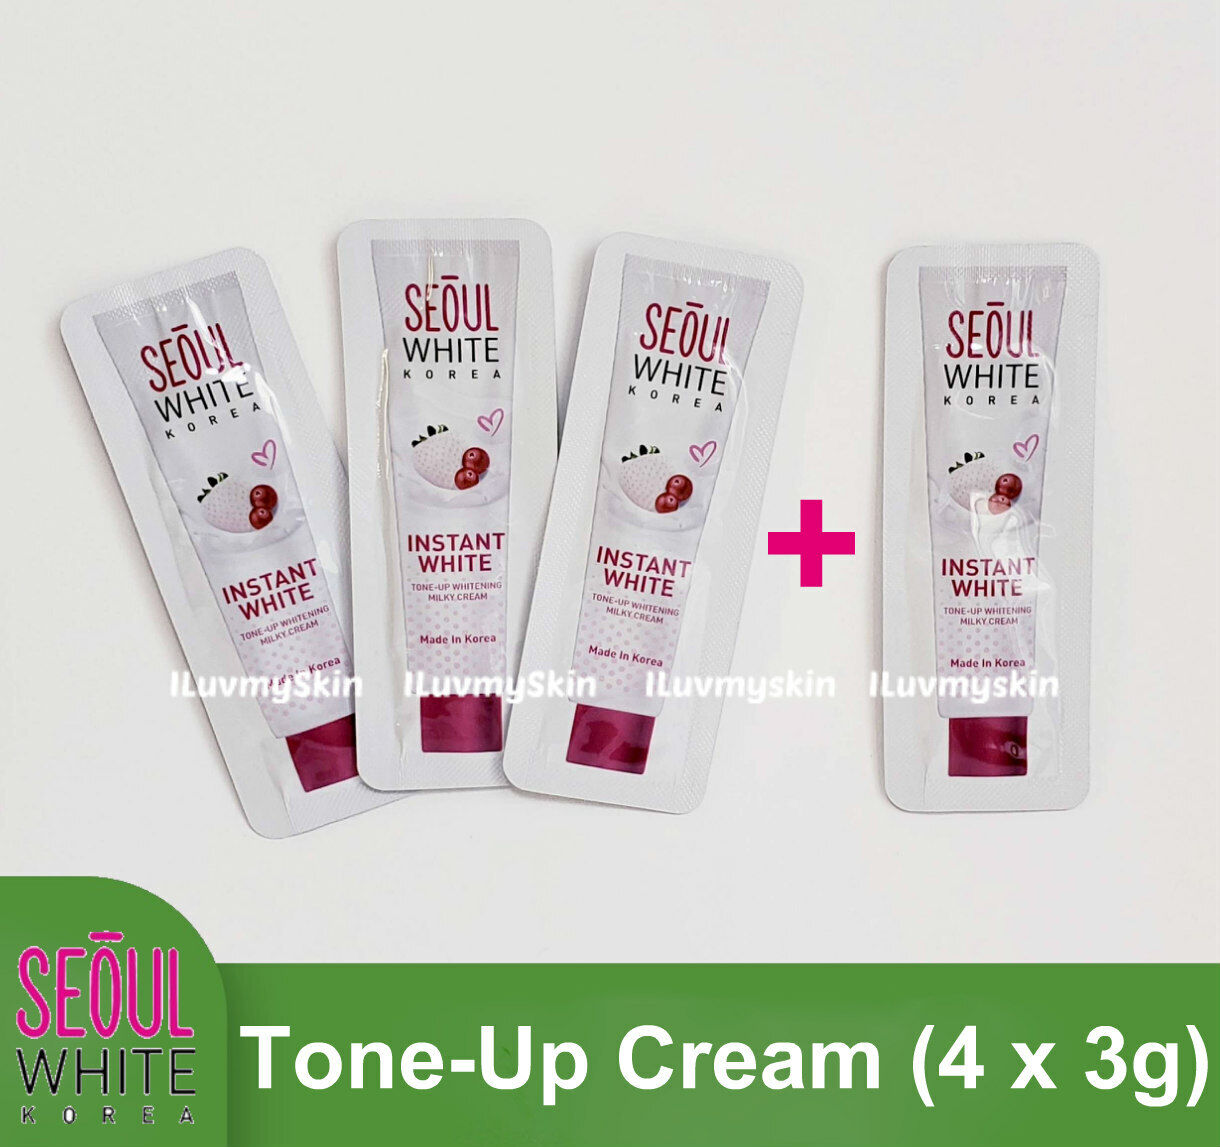 Seoul White Korea Instant WHITENING Tone-Up Milky Cream For Face 4 x 3g (Refill)